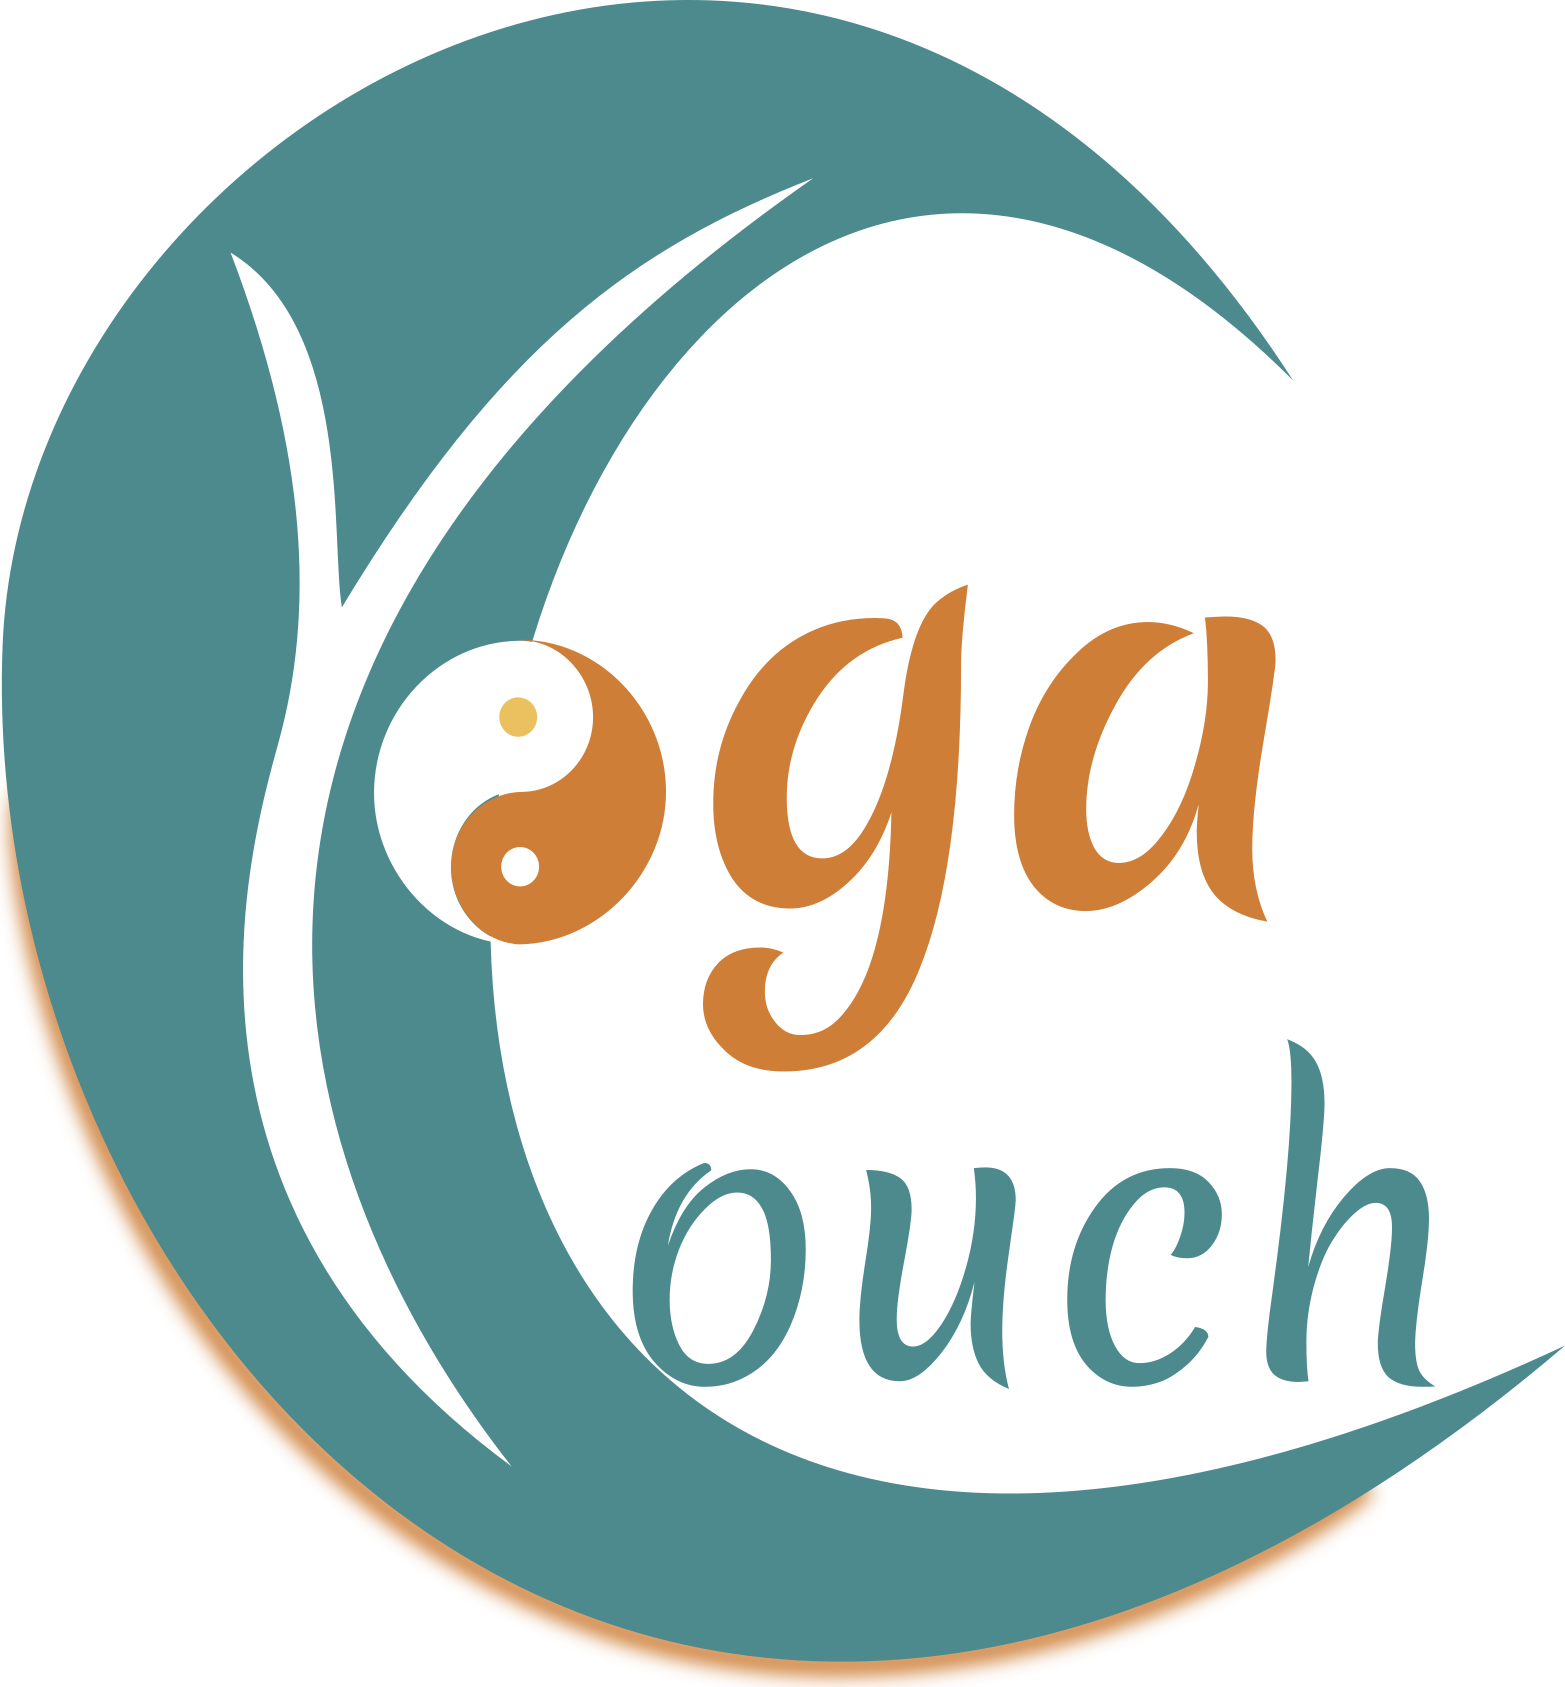 Das Logo von Yogacouch zeigt eine Welle, die gleichzeitig das C von Couch ist. Im inneren der Welle ist ein Y für Yoga. Das O von Yoga ist das Yin Yang Zeichen